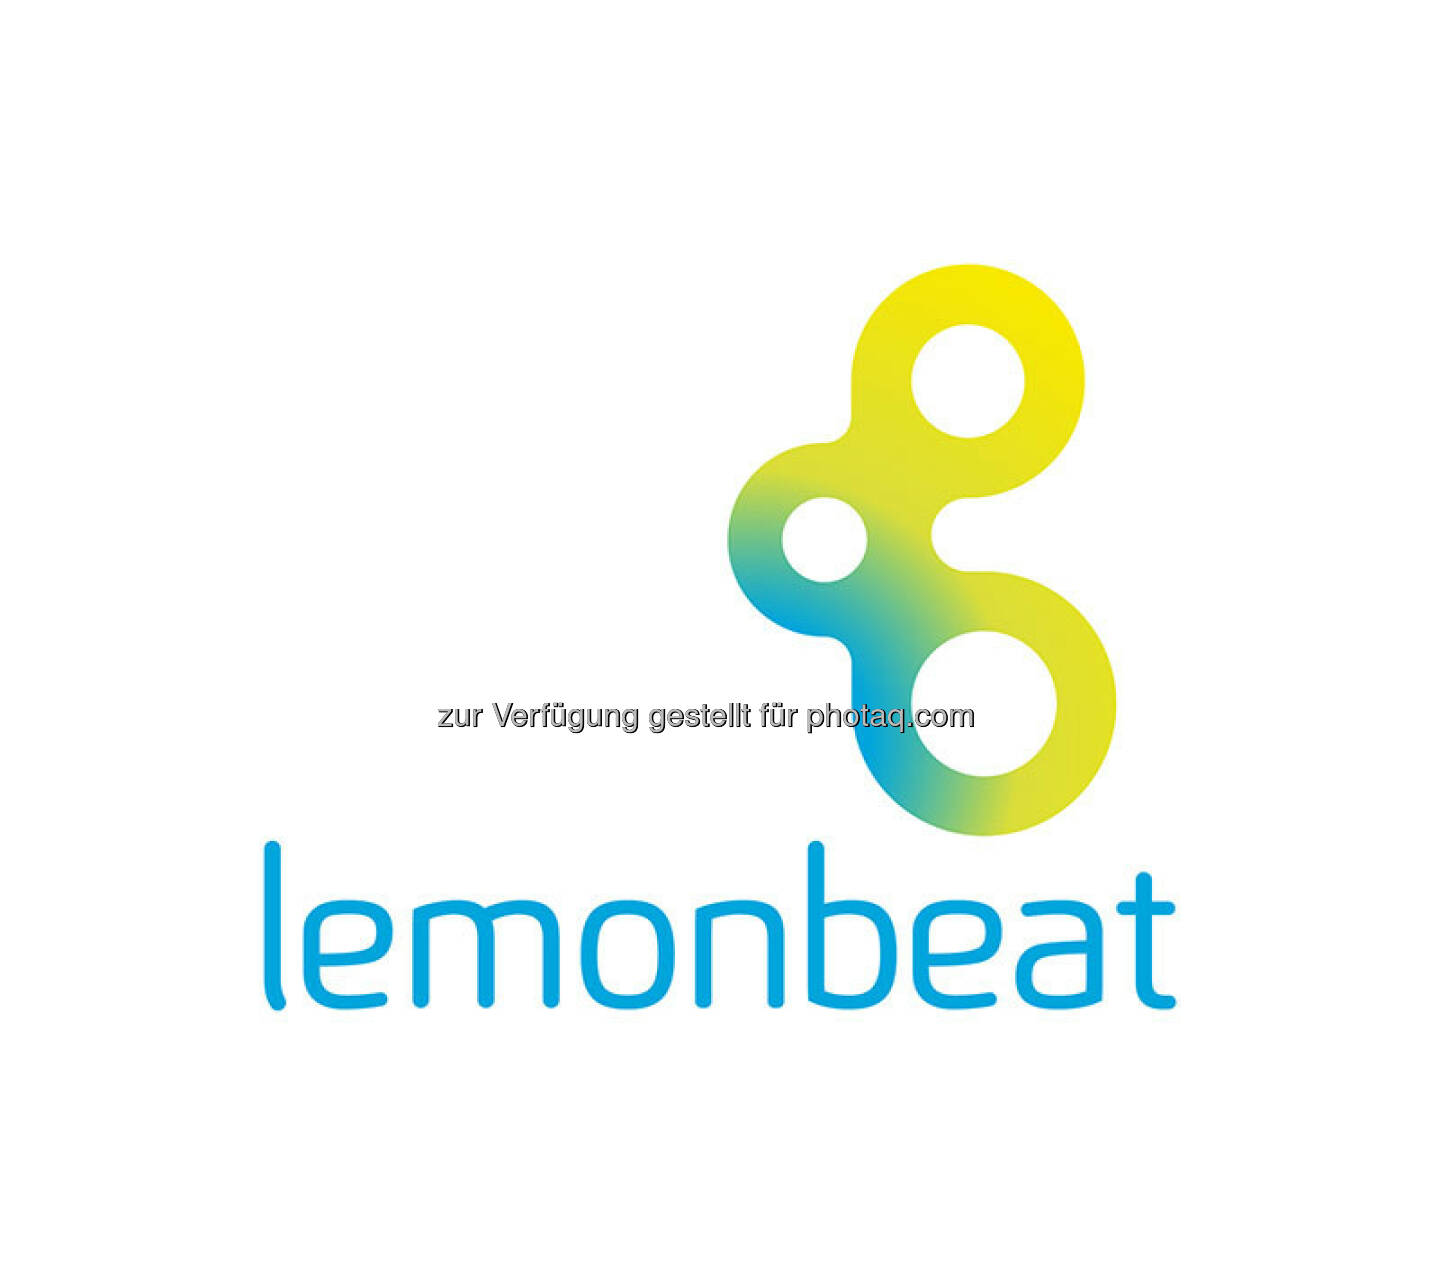 Lemonbeat – RWE gründet GmbH für Lemonbeat : Kommunikationsstandard - neue RWE-Gesellschaft entwickelt Sprache für das Internet der Dinge : © RWE Effizienz